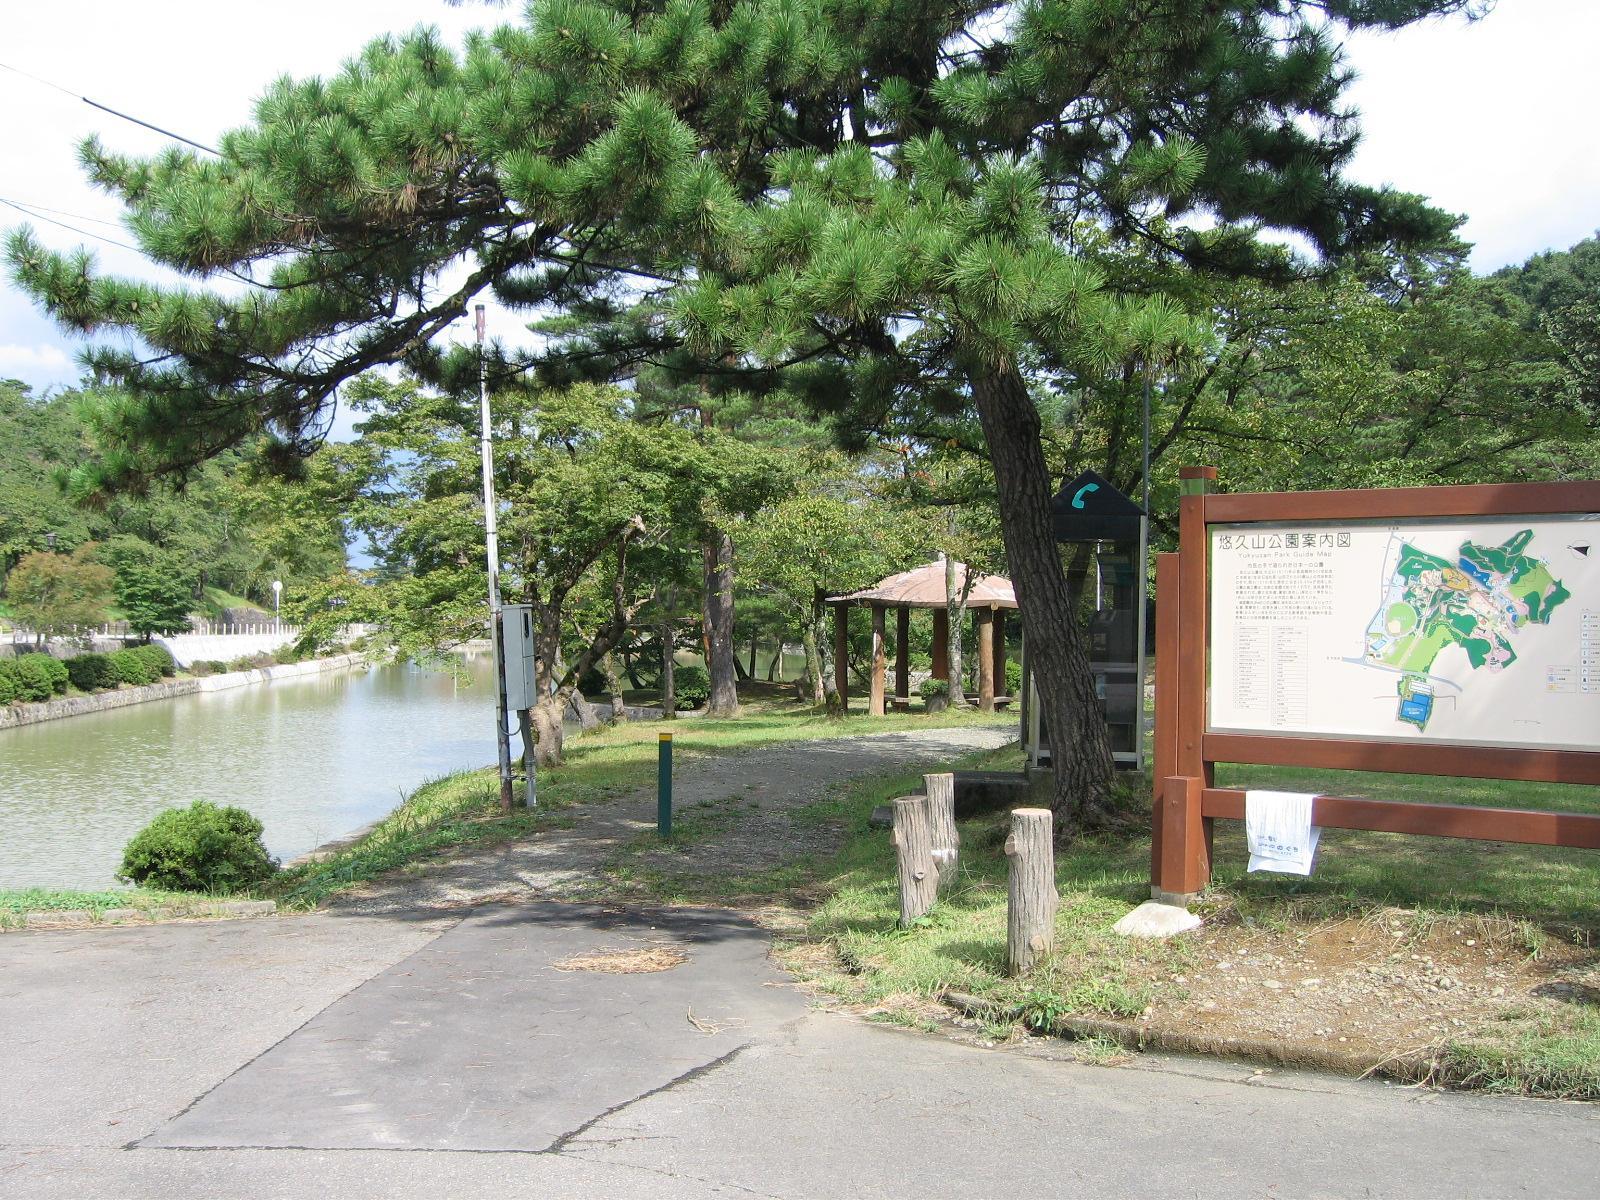 悠久山公園内の松と池の様子の写真